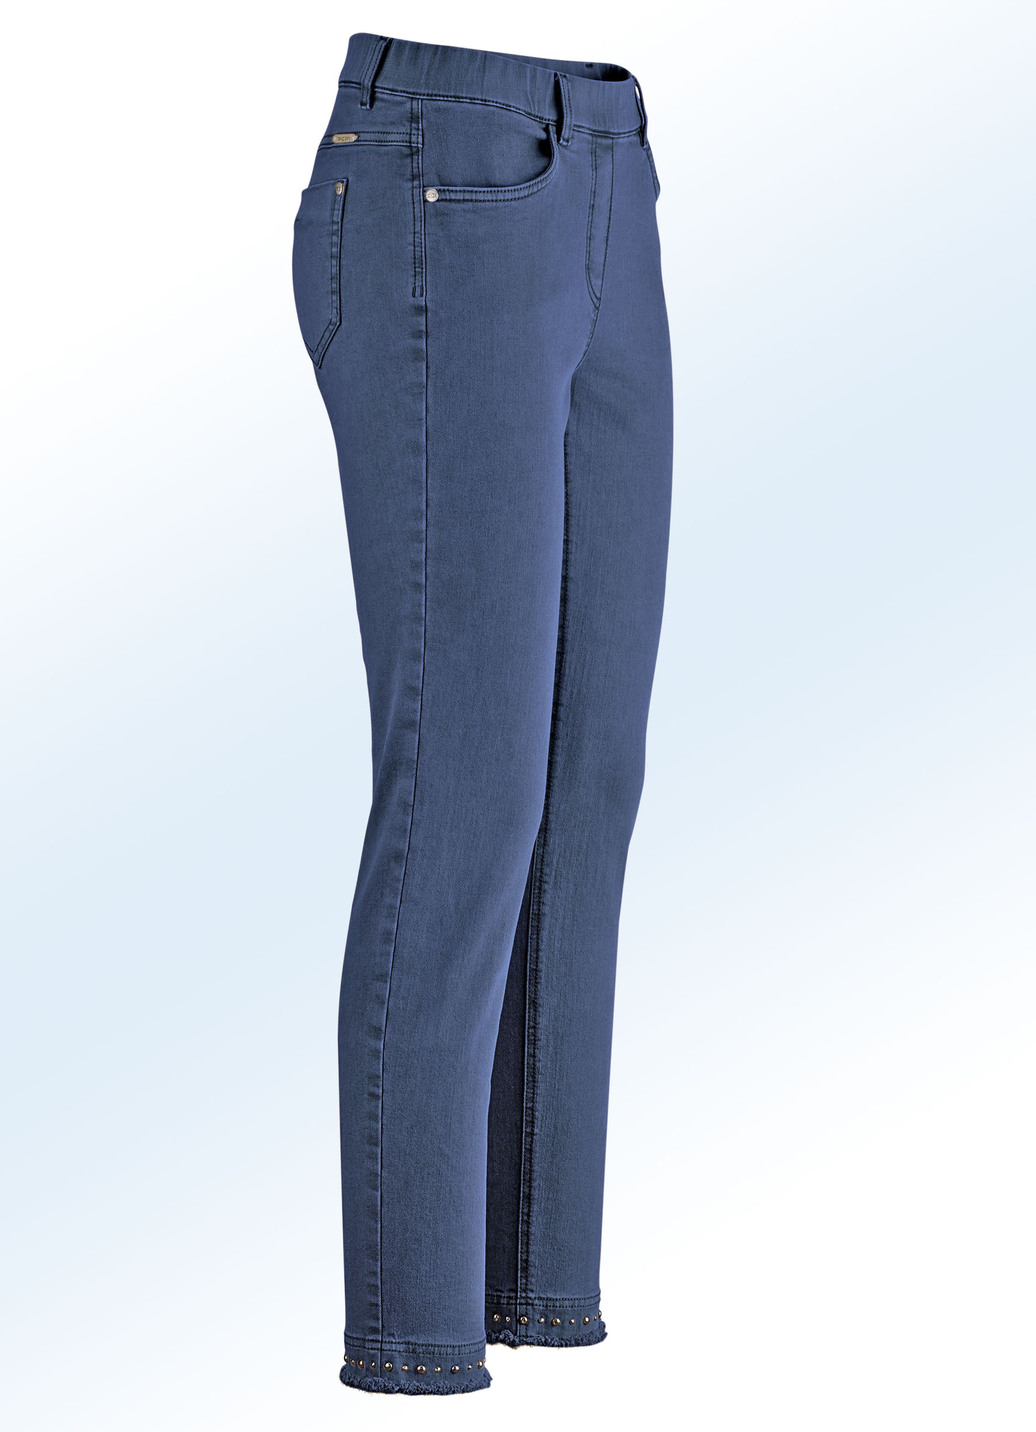 Magic-Jeans mit toller Nietenzier sowie angesagtem Fransensaum, Jeansblau, Größe 44 von ASCARI